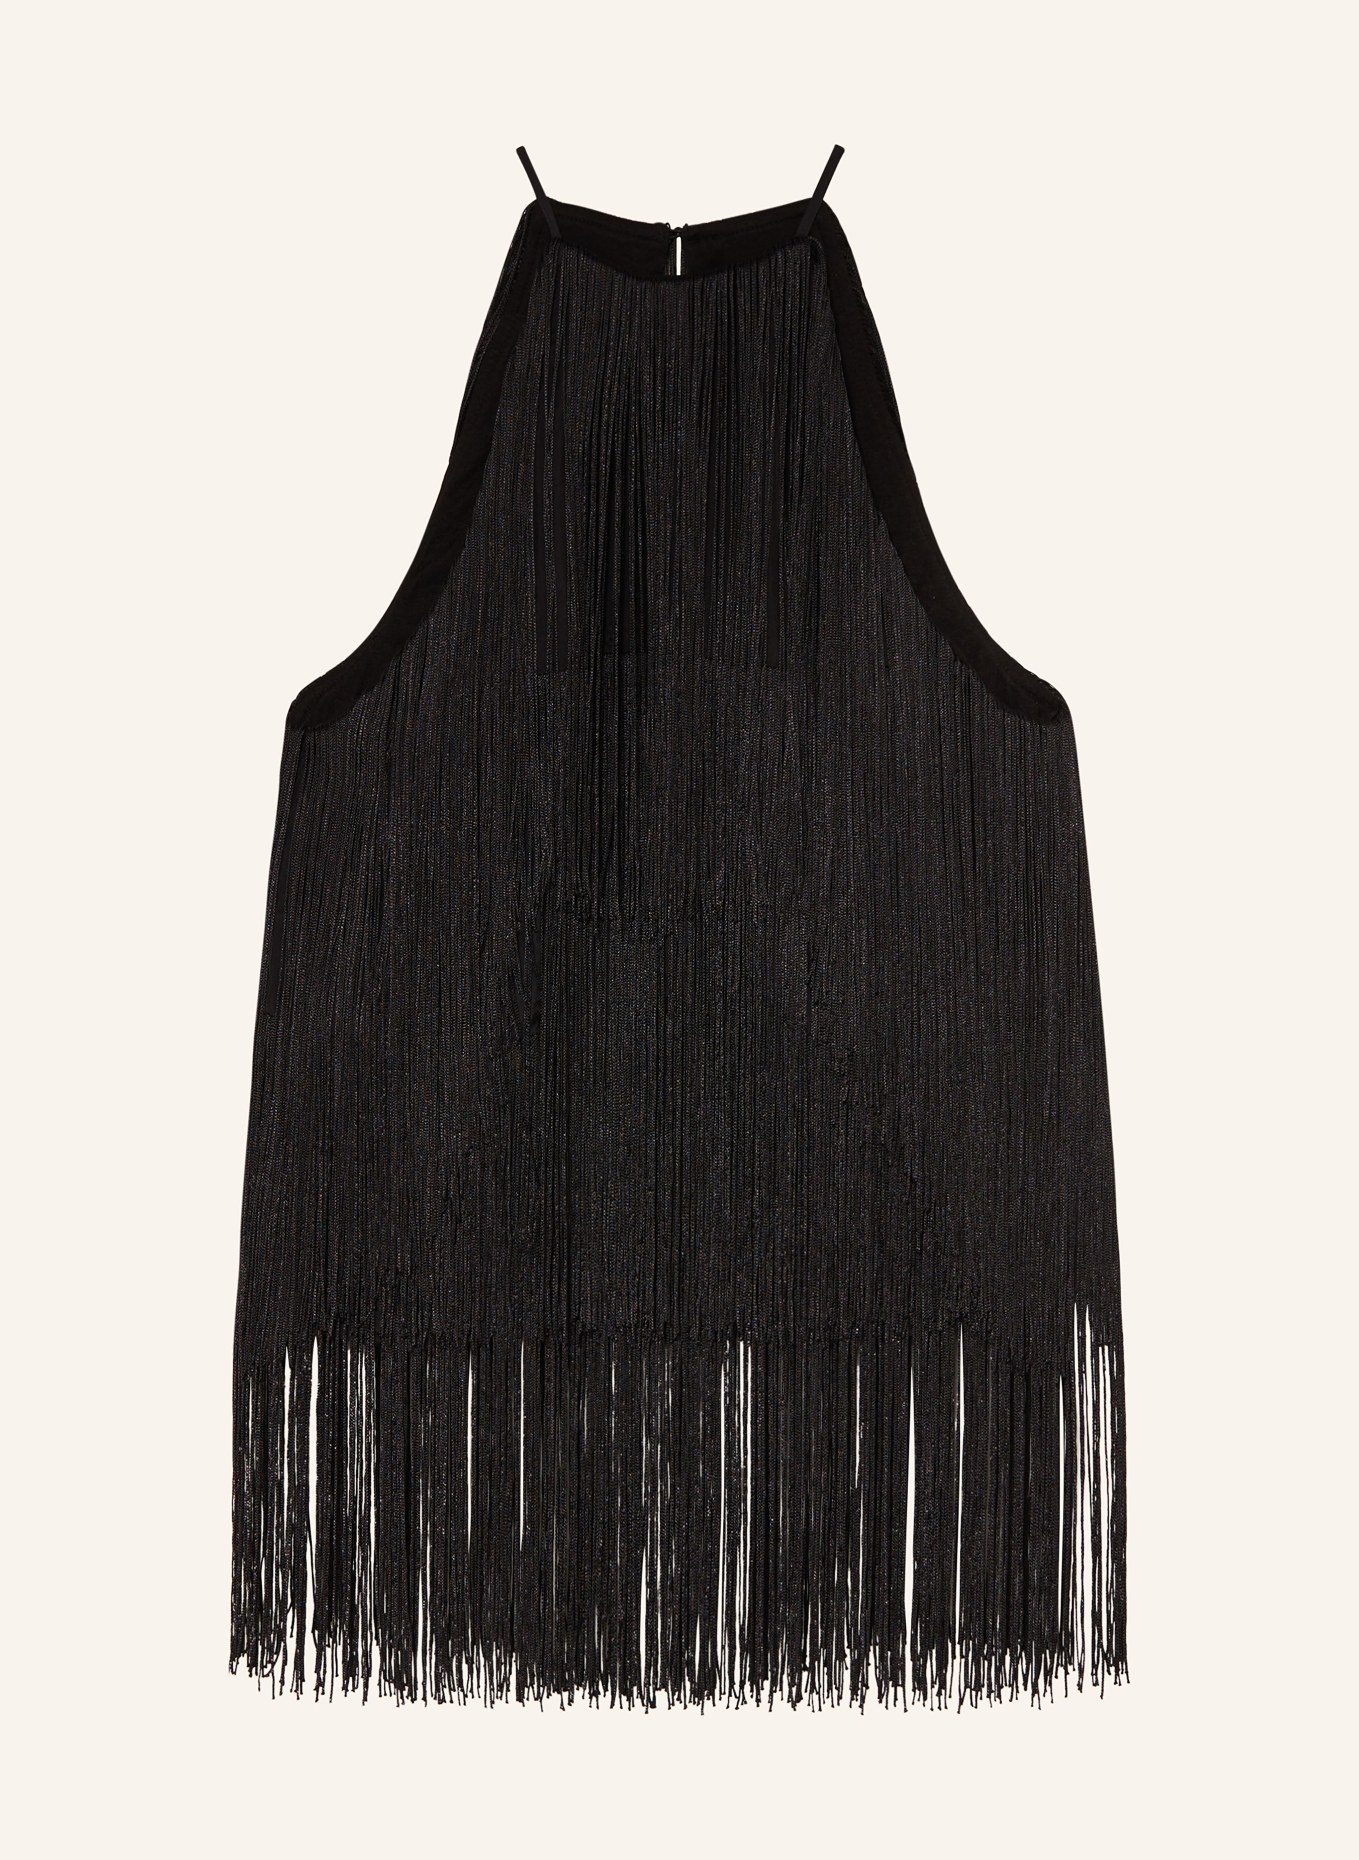 ENVELOPE 1976 Top FRINGE with fringes, Color: BLACK (Image 1)